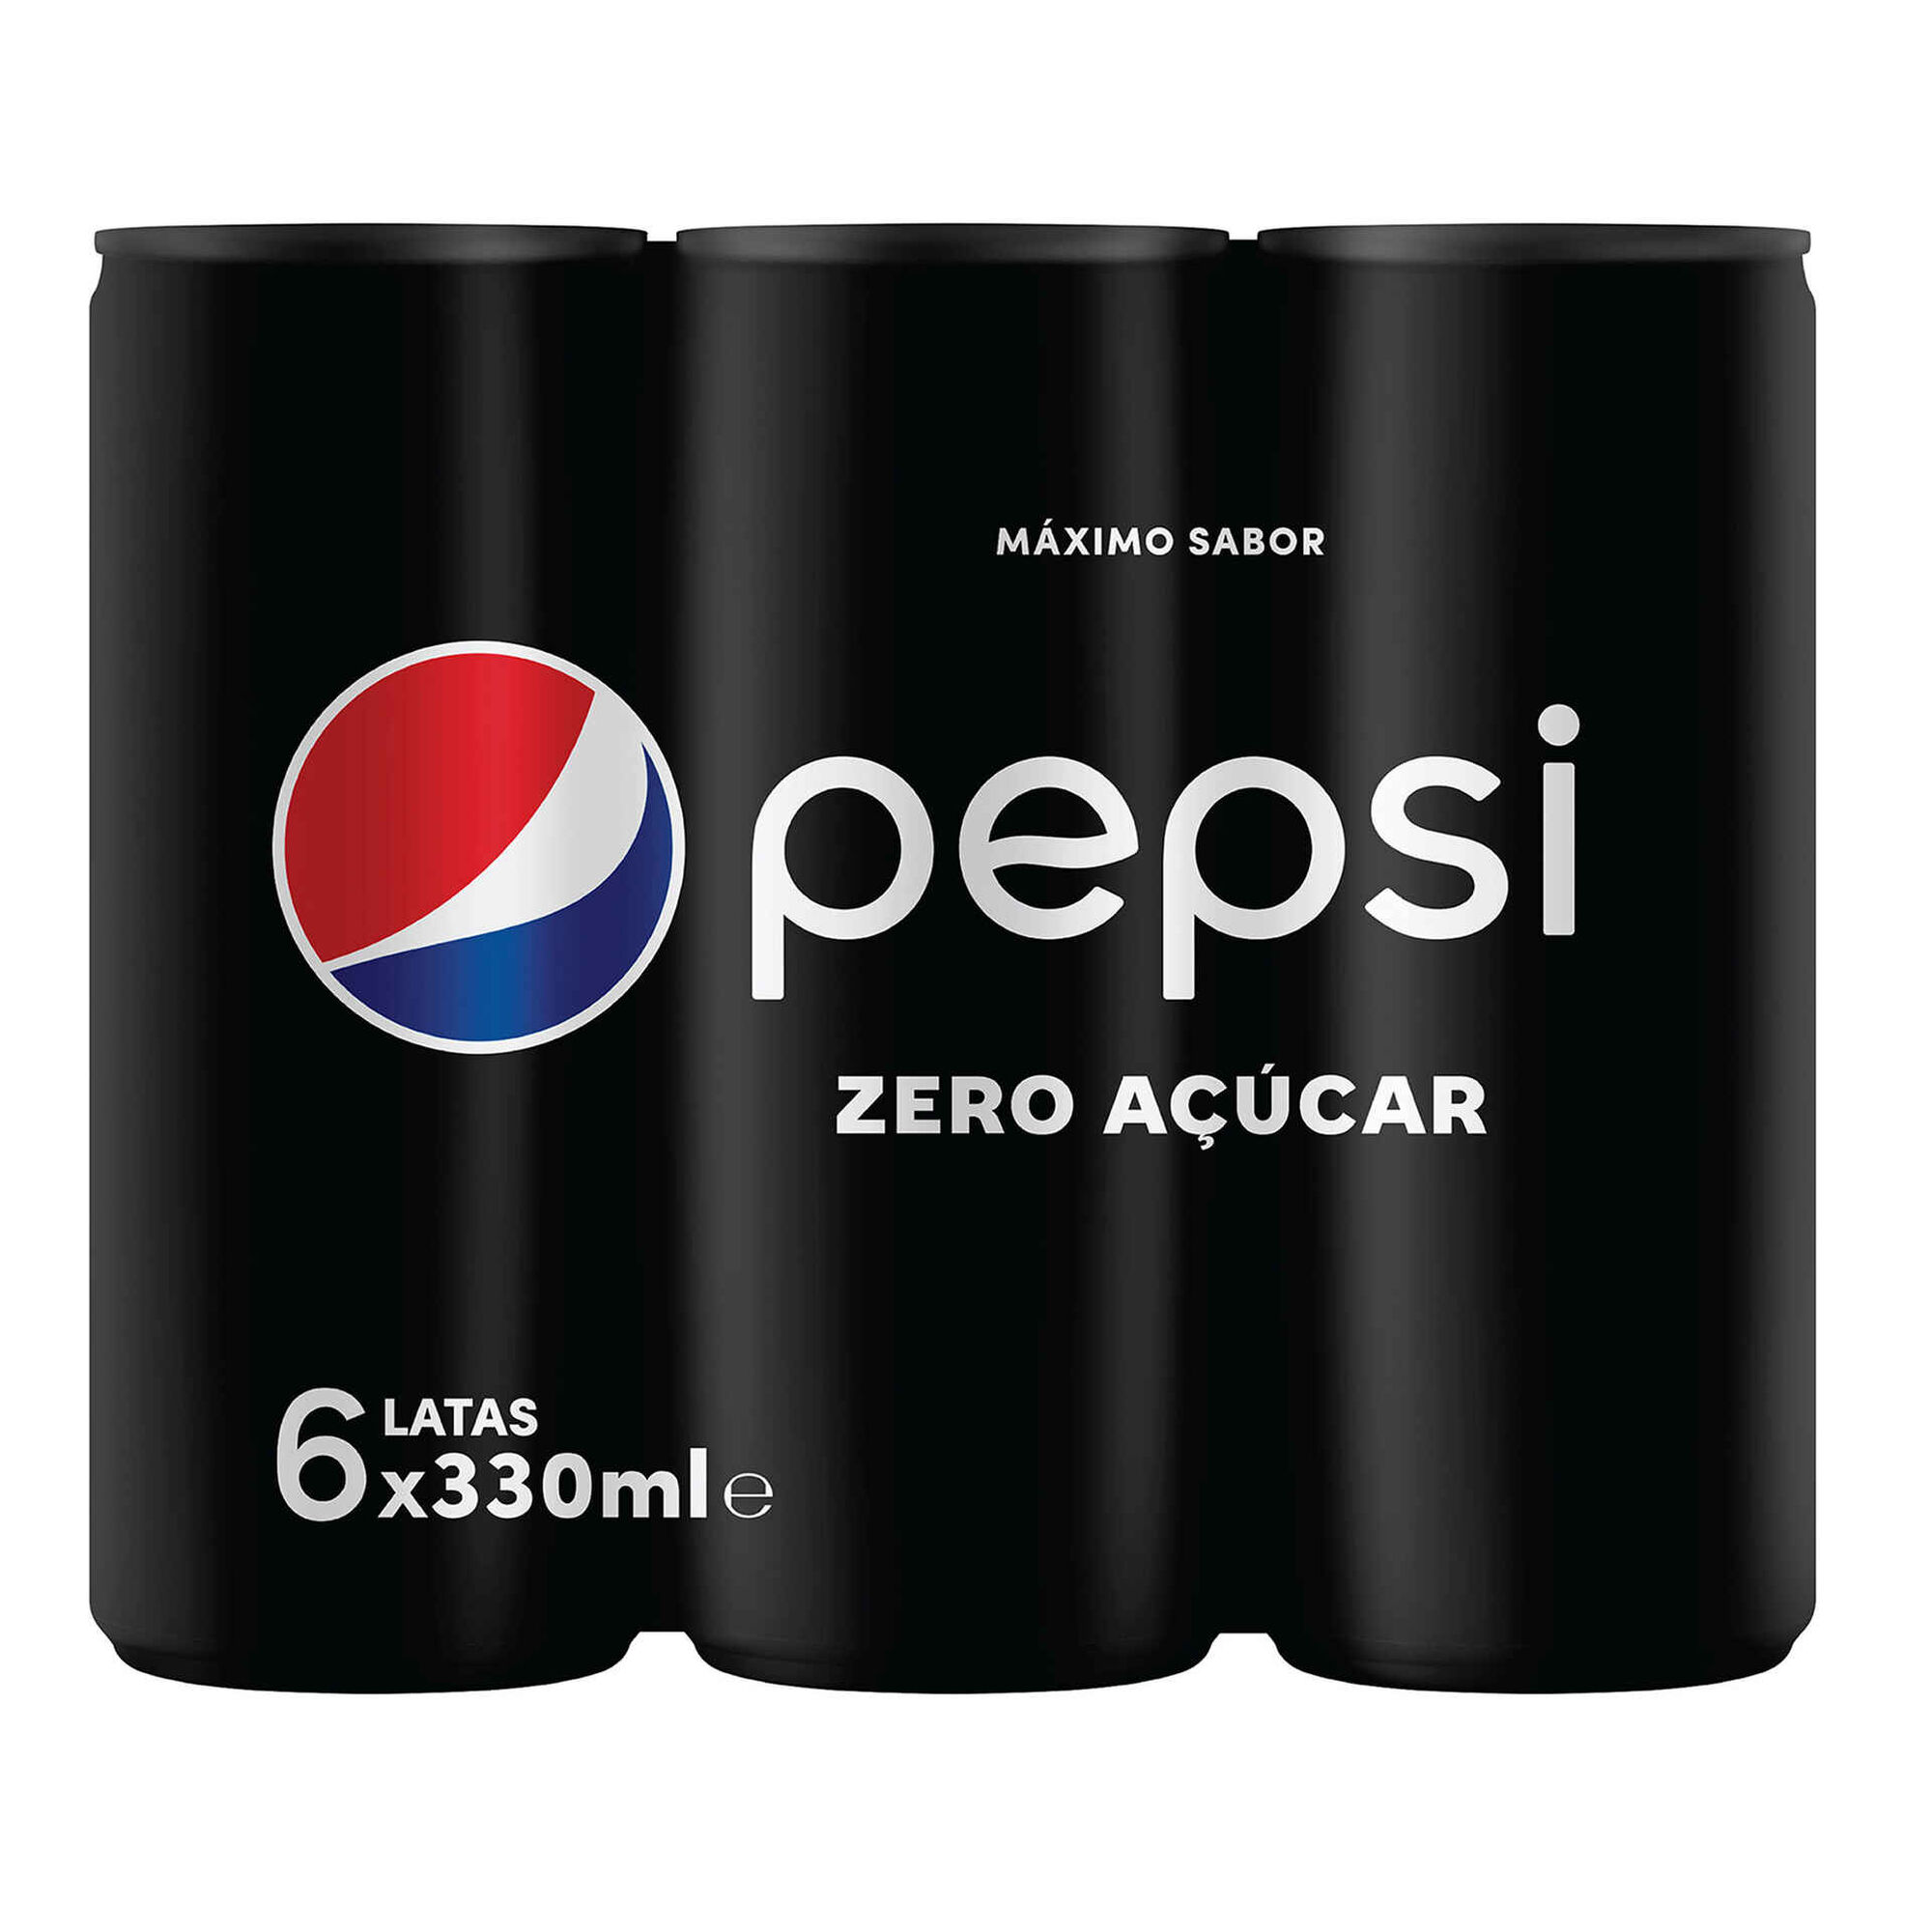 Refrigerante com Gás Cola Zero